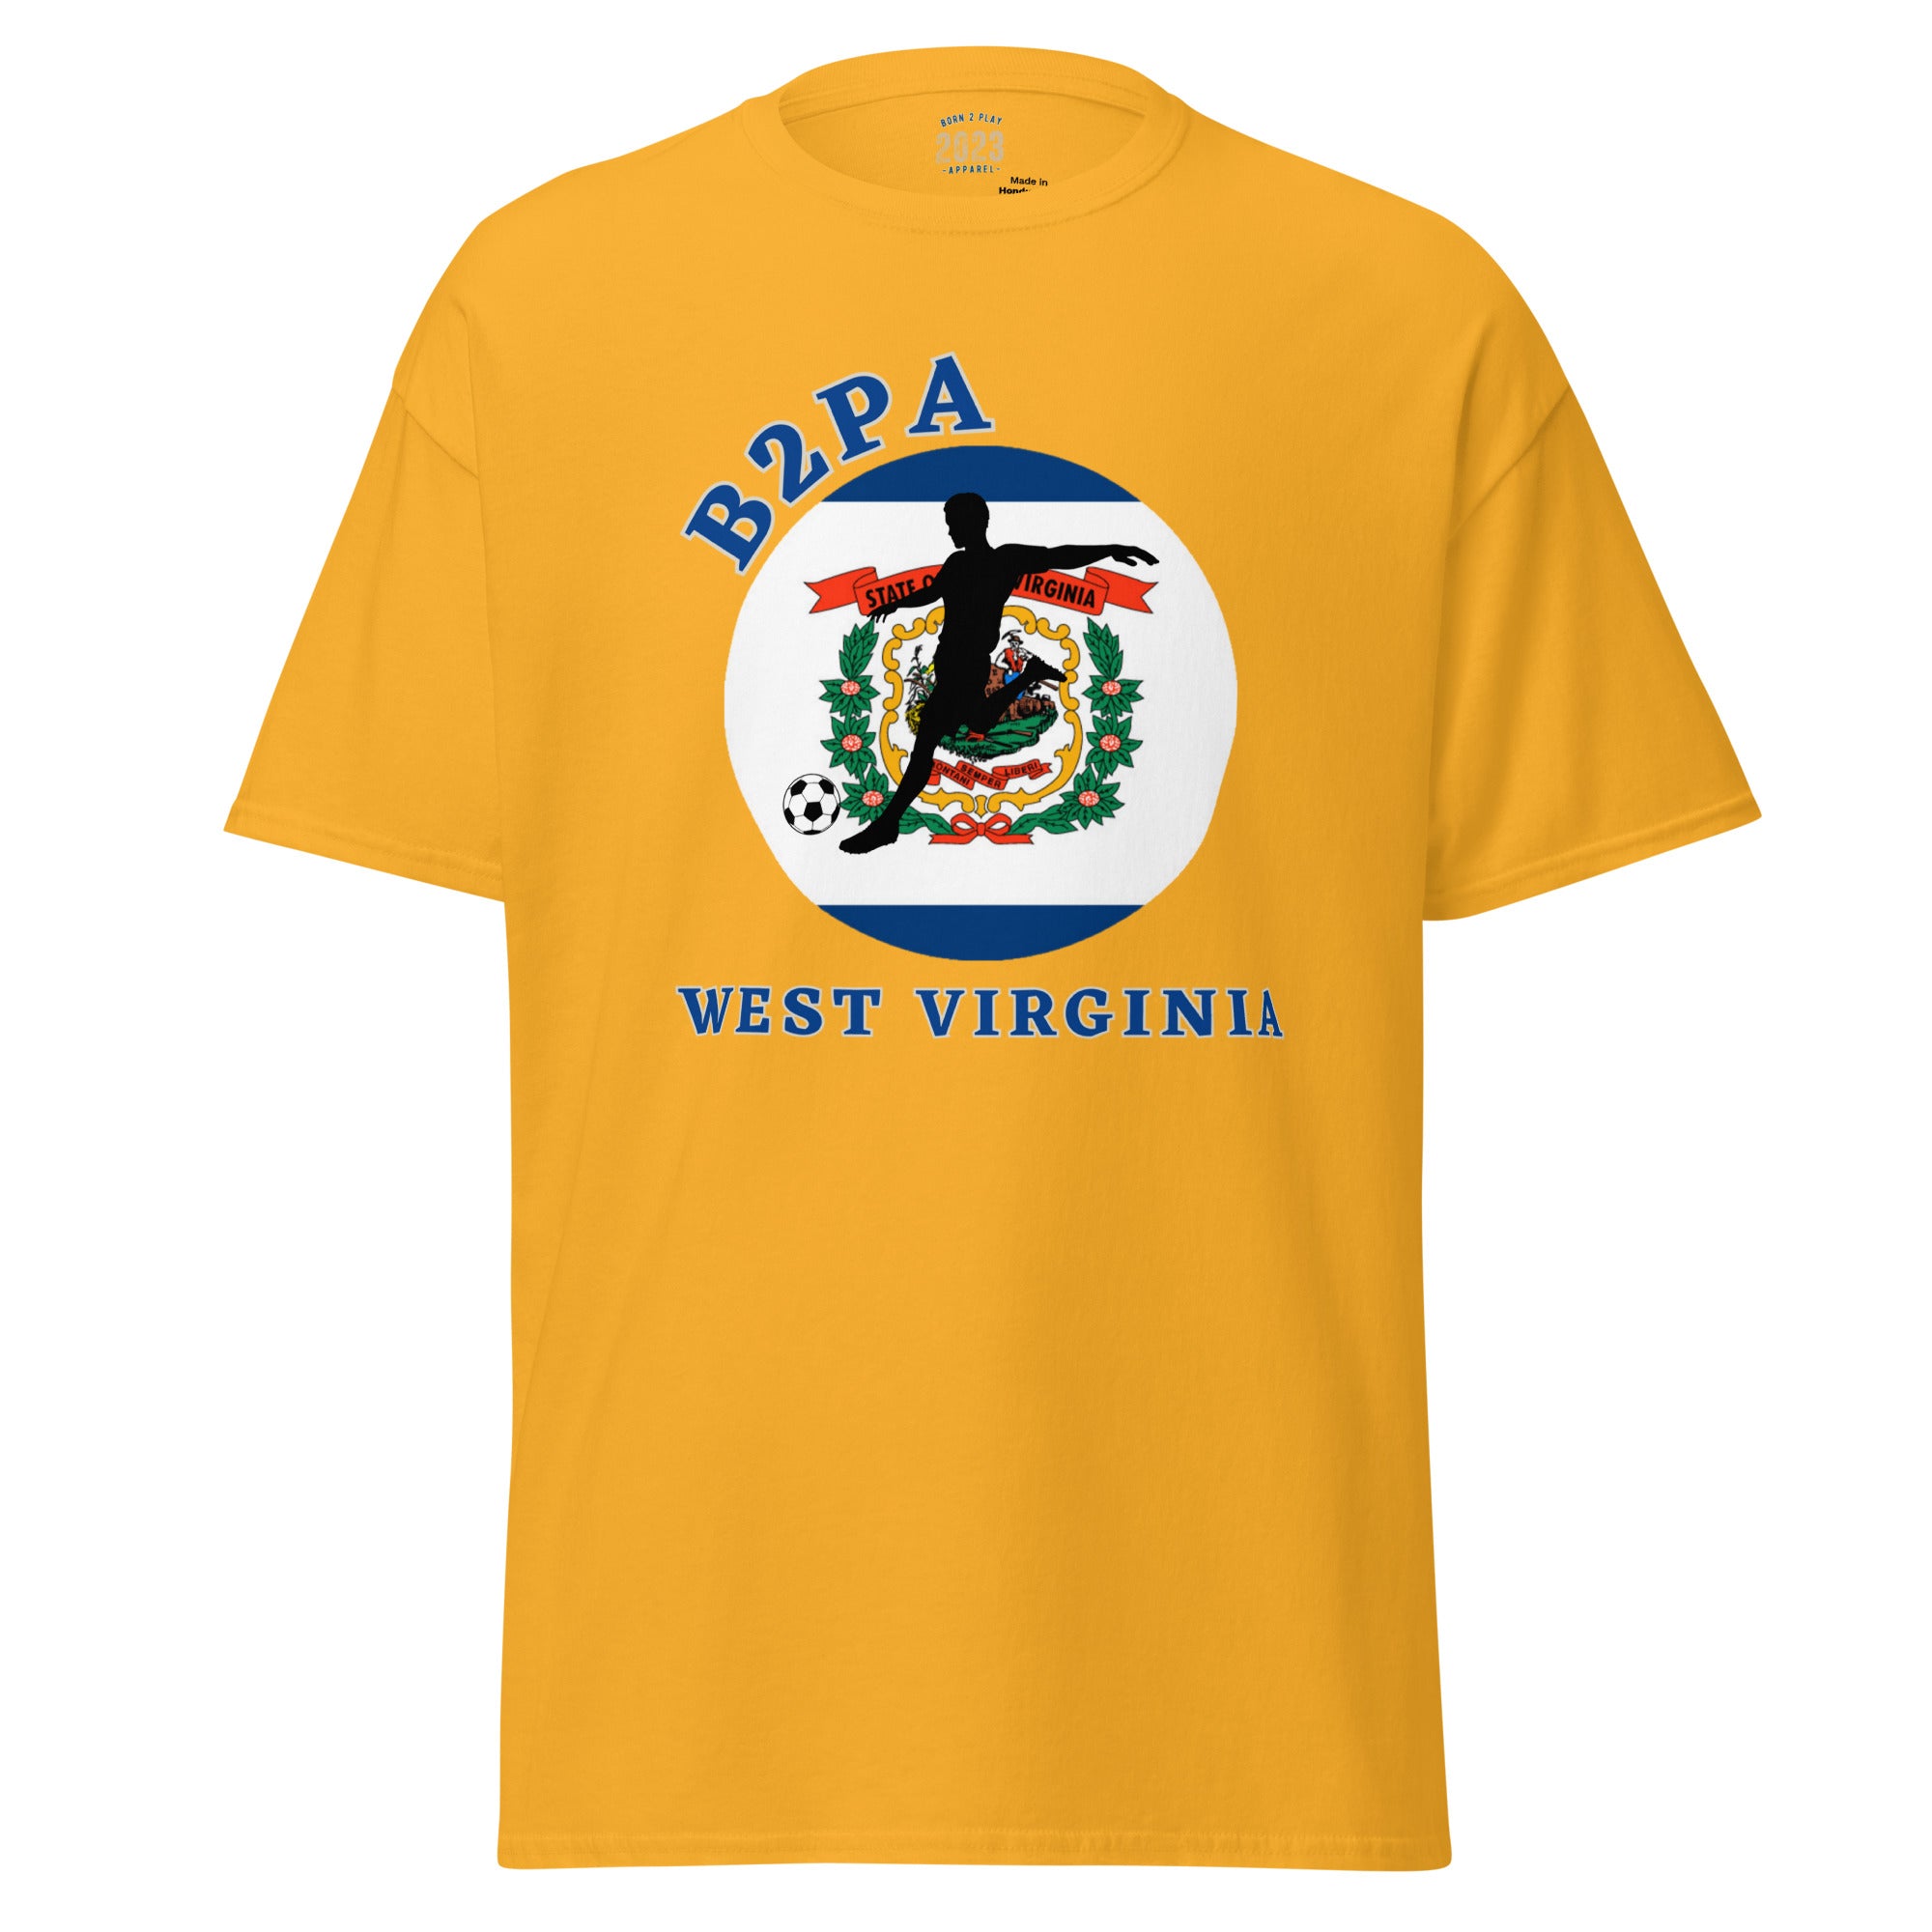 West Virginia Bends it Better